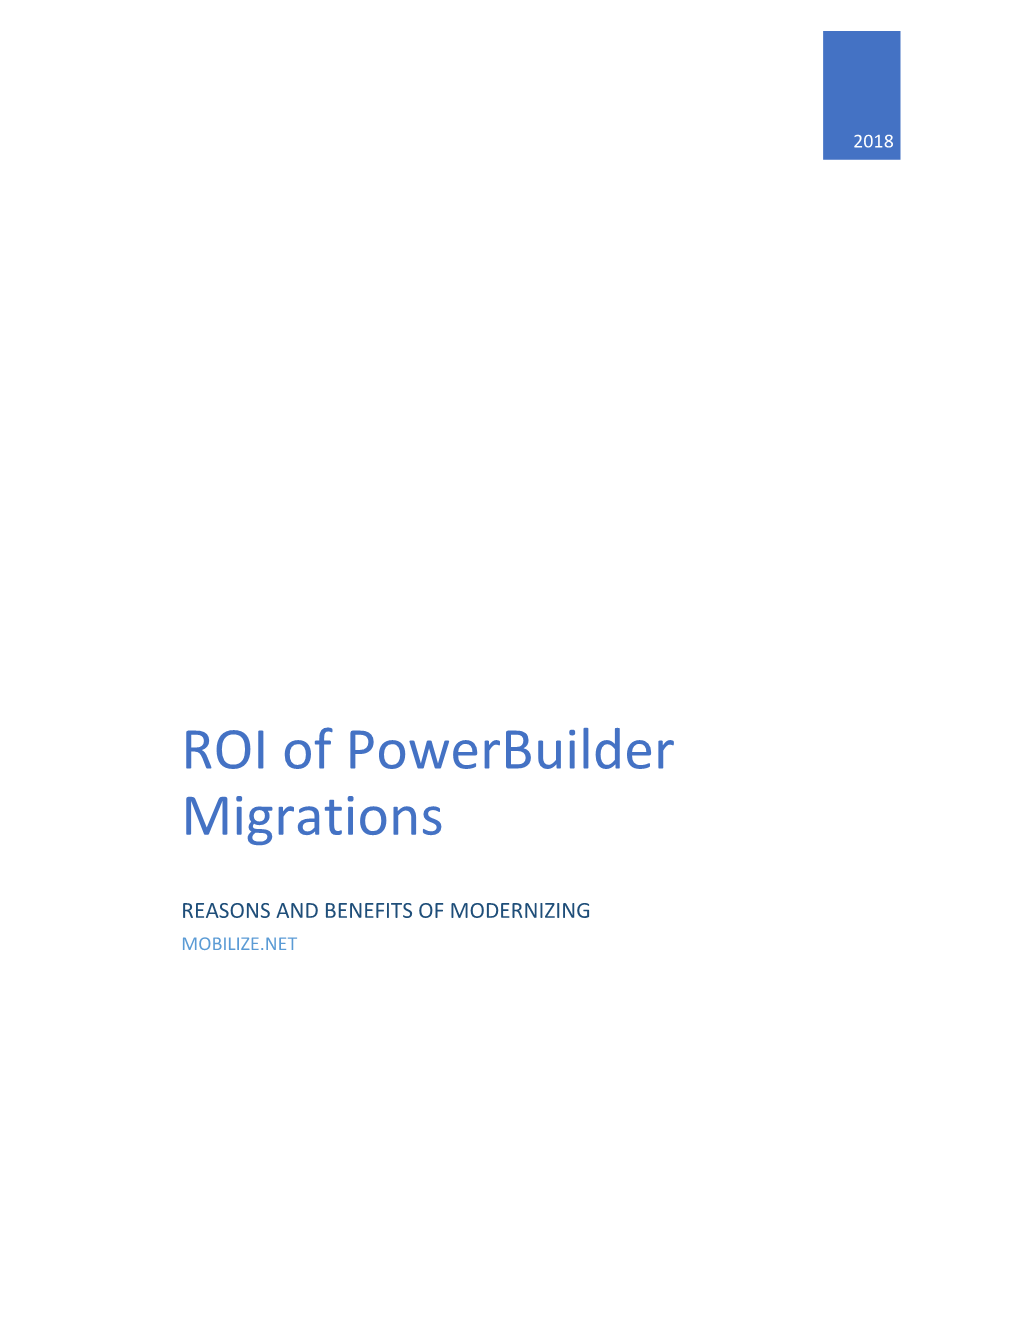 ROI of Powerbuilder Migrations